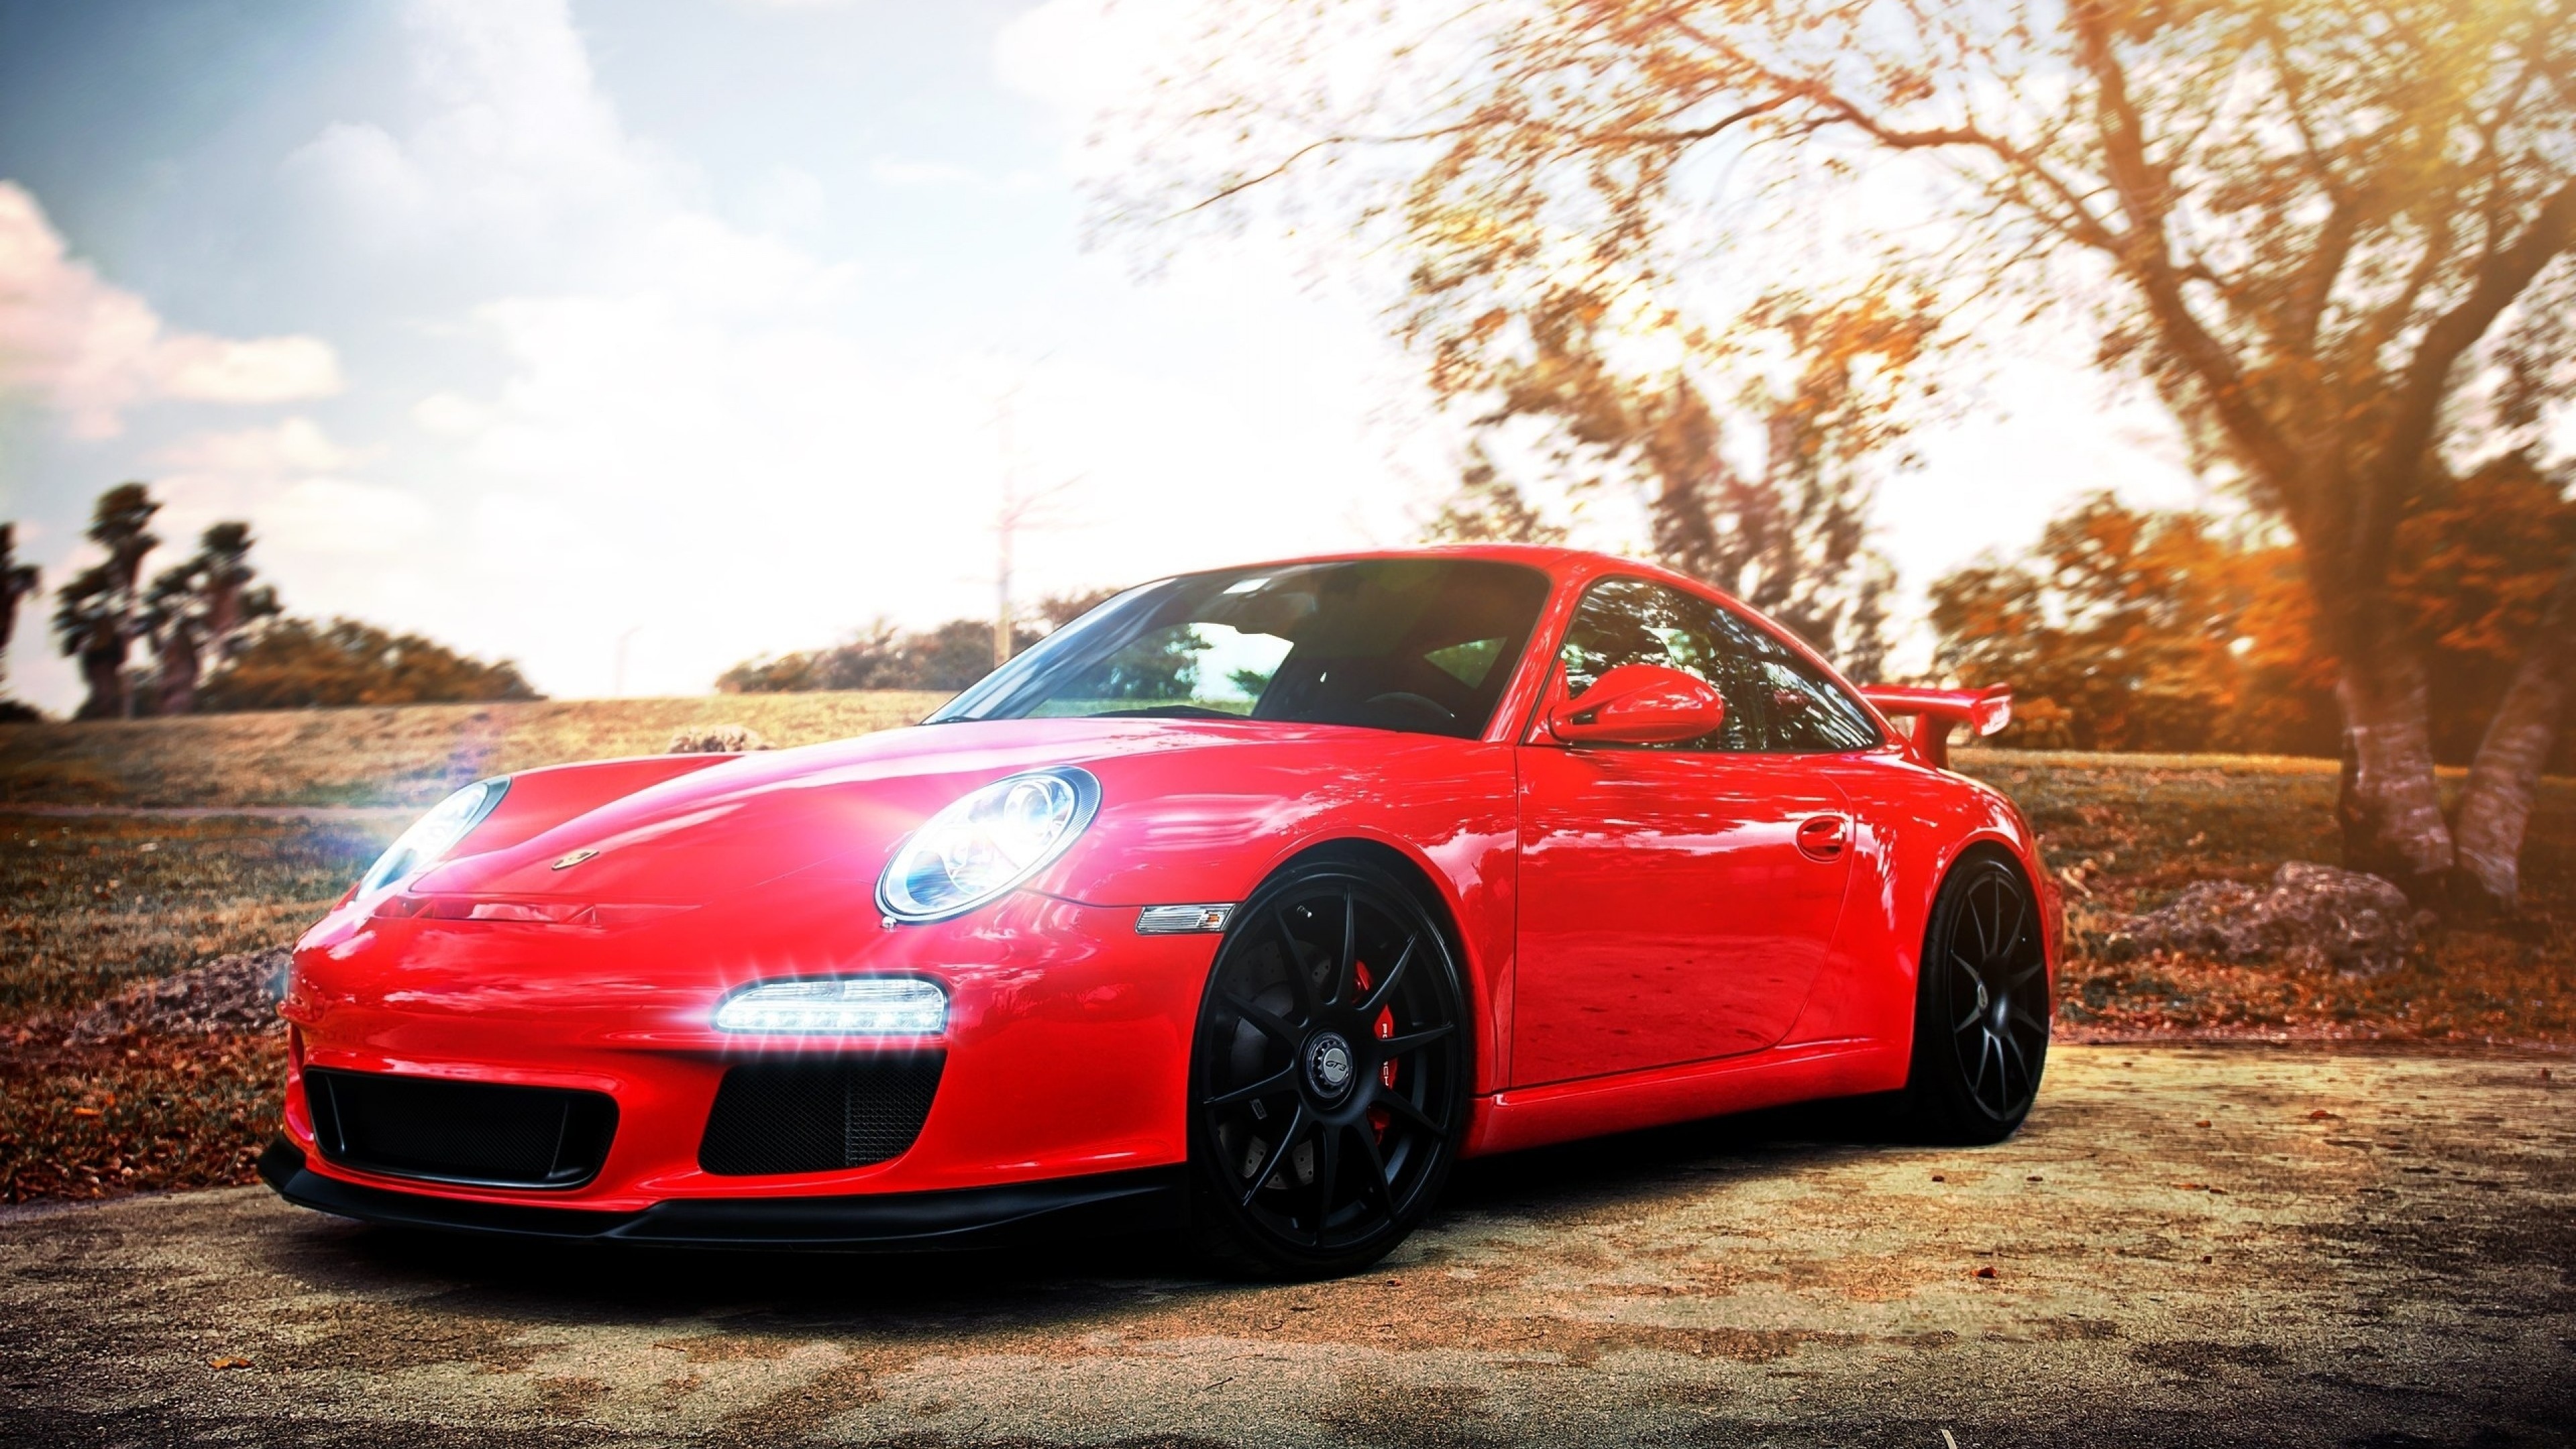 3840x2160 4K Ultra HD Porsche Wallpapers HD, Desktop Backgrounds 